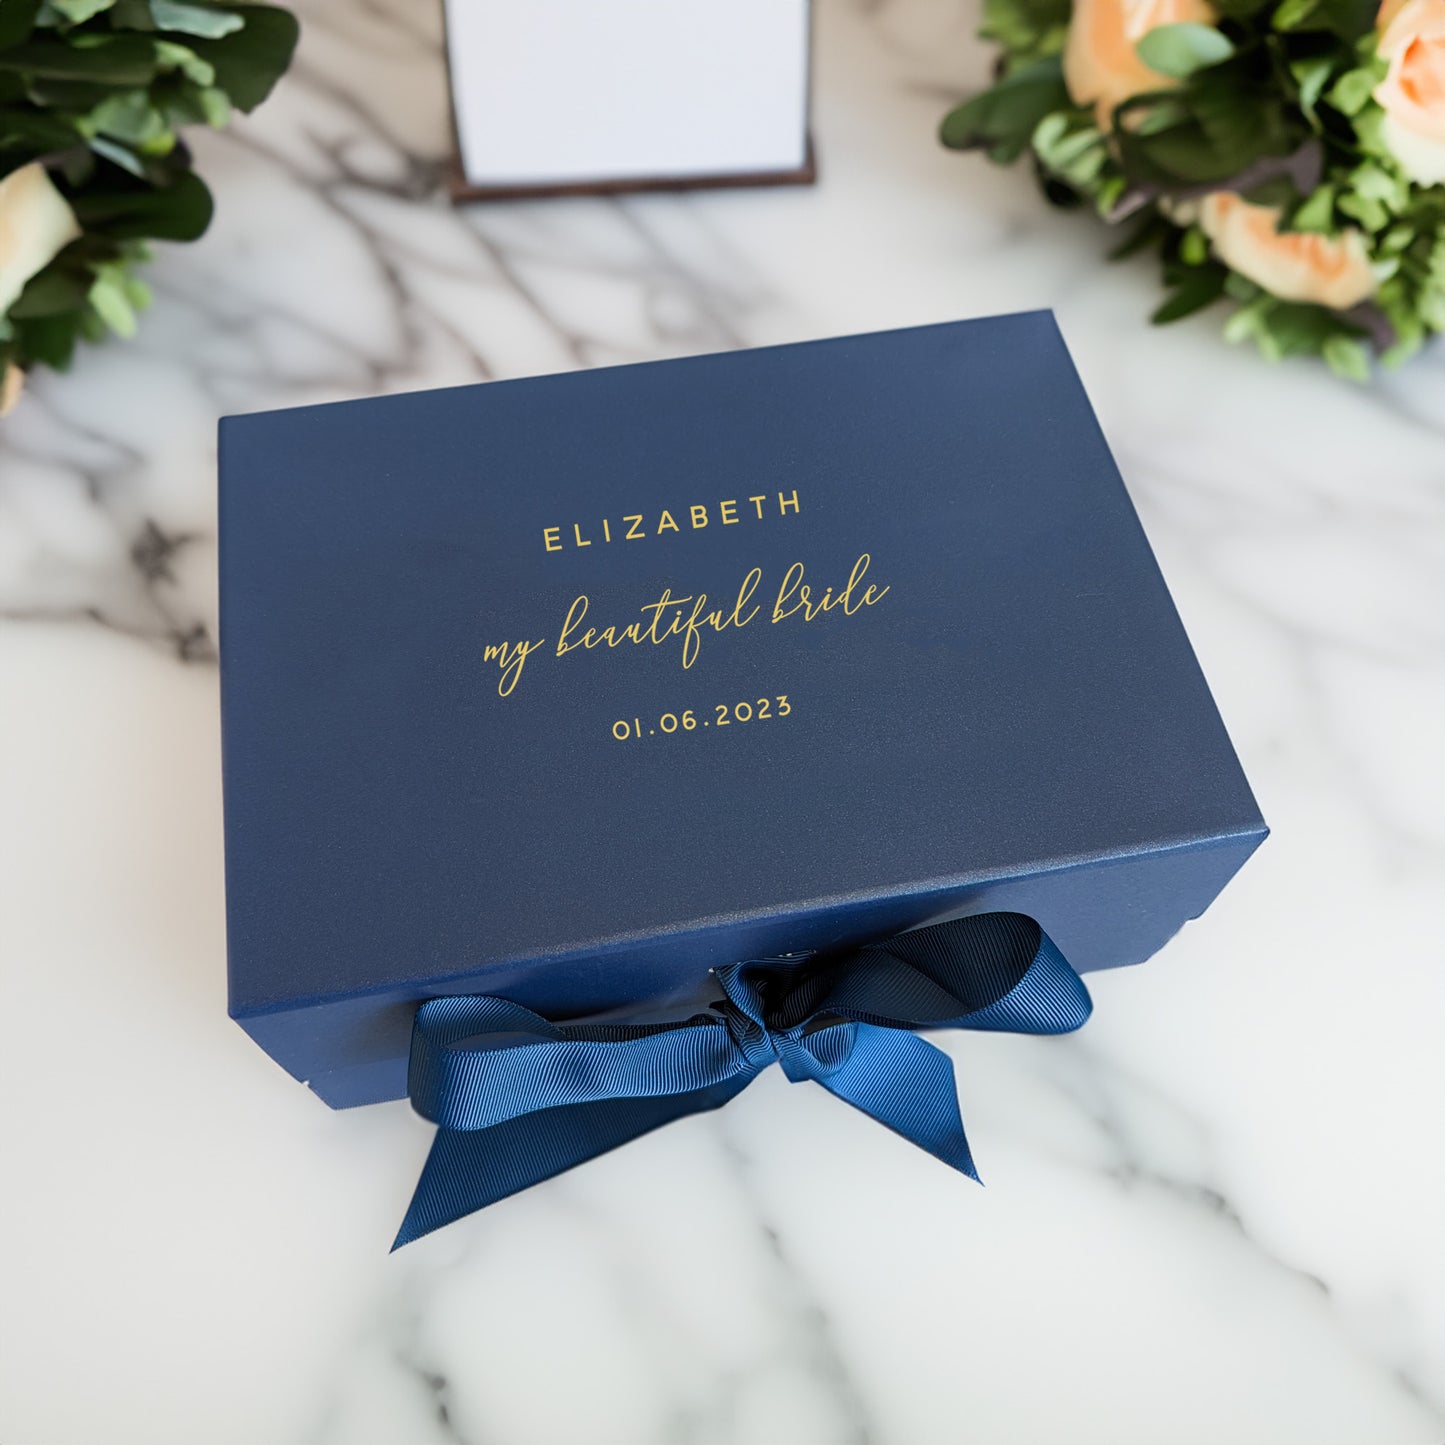 My Beautiful Bride Gift Box - Multi Size - Personalised